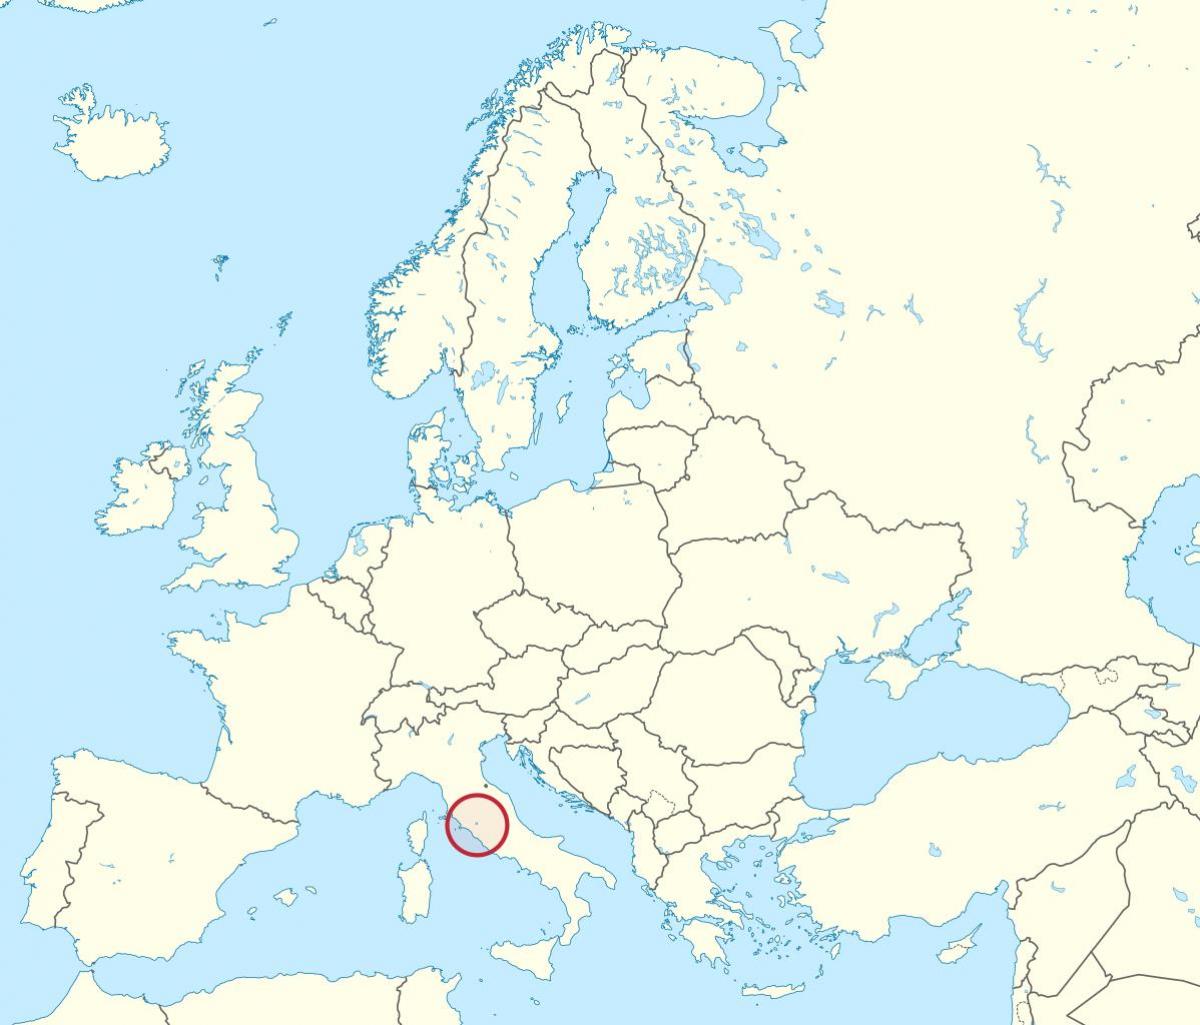 Harta e Vatikanit të evropës